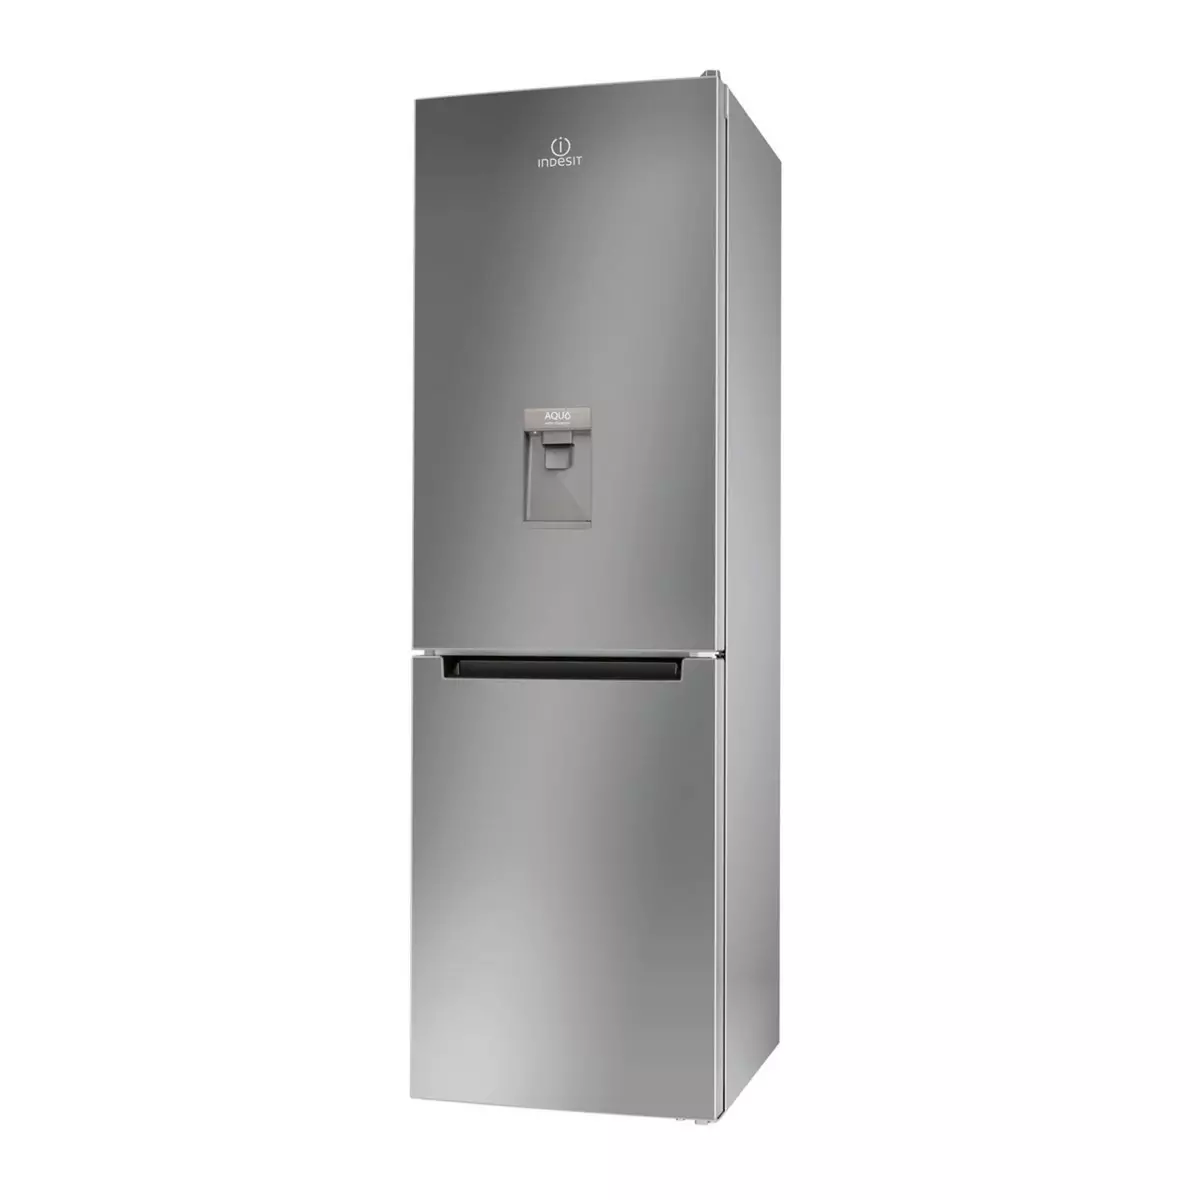 Réfrigérateur - Frigo pas cher  Réfrigérateur combiné, Gros  electromenager, Refrigerateur